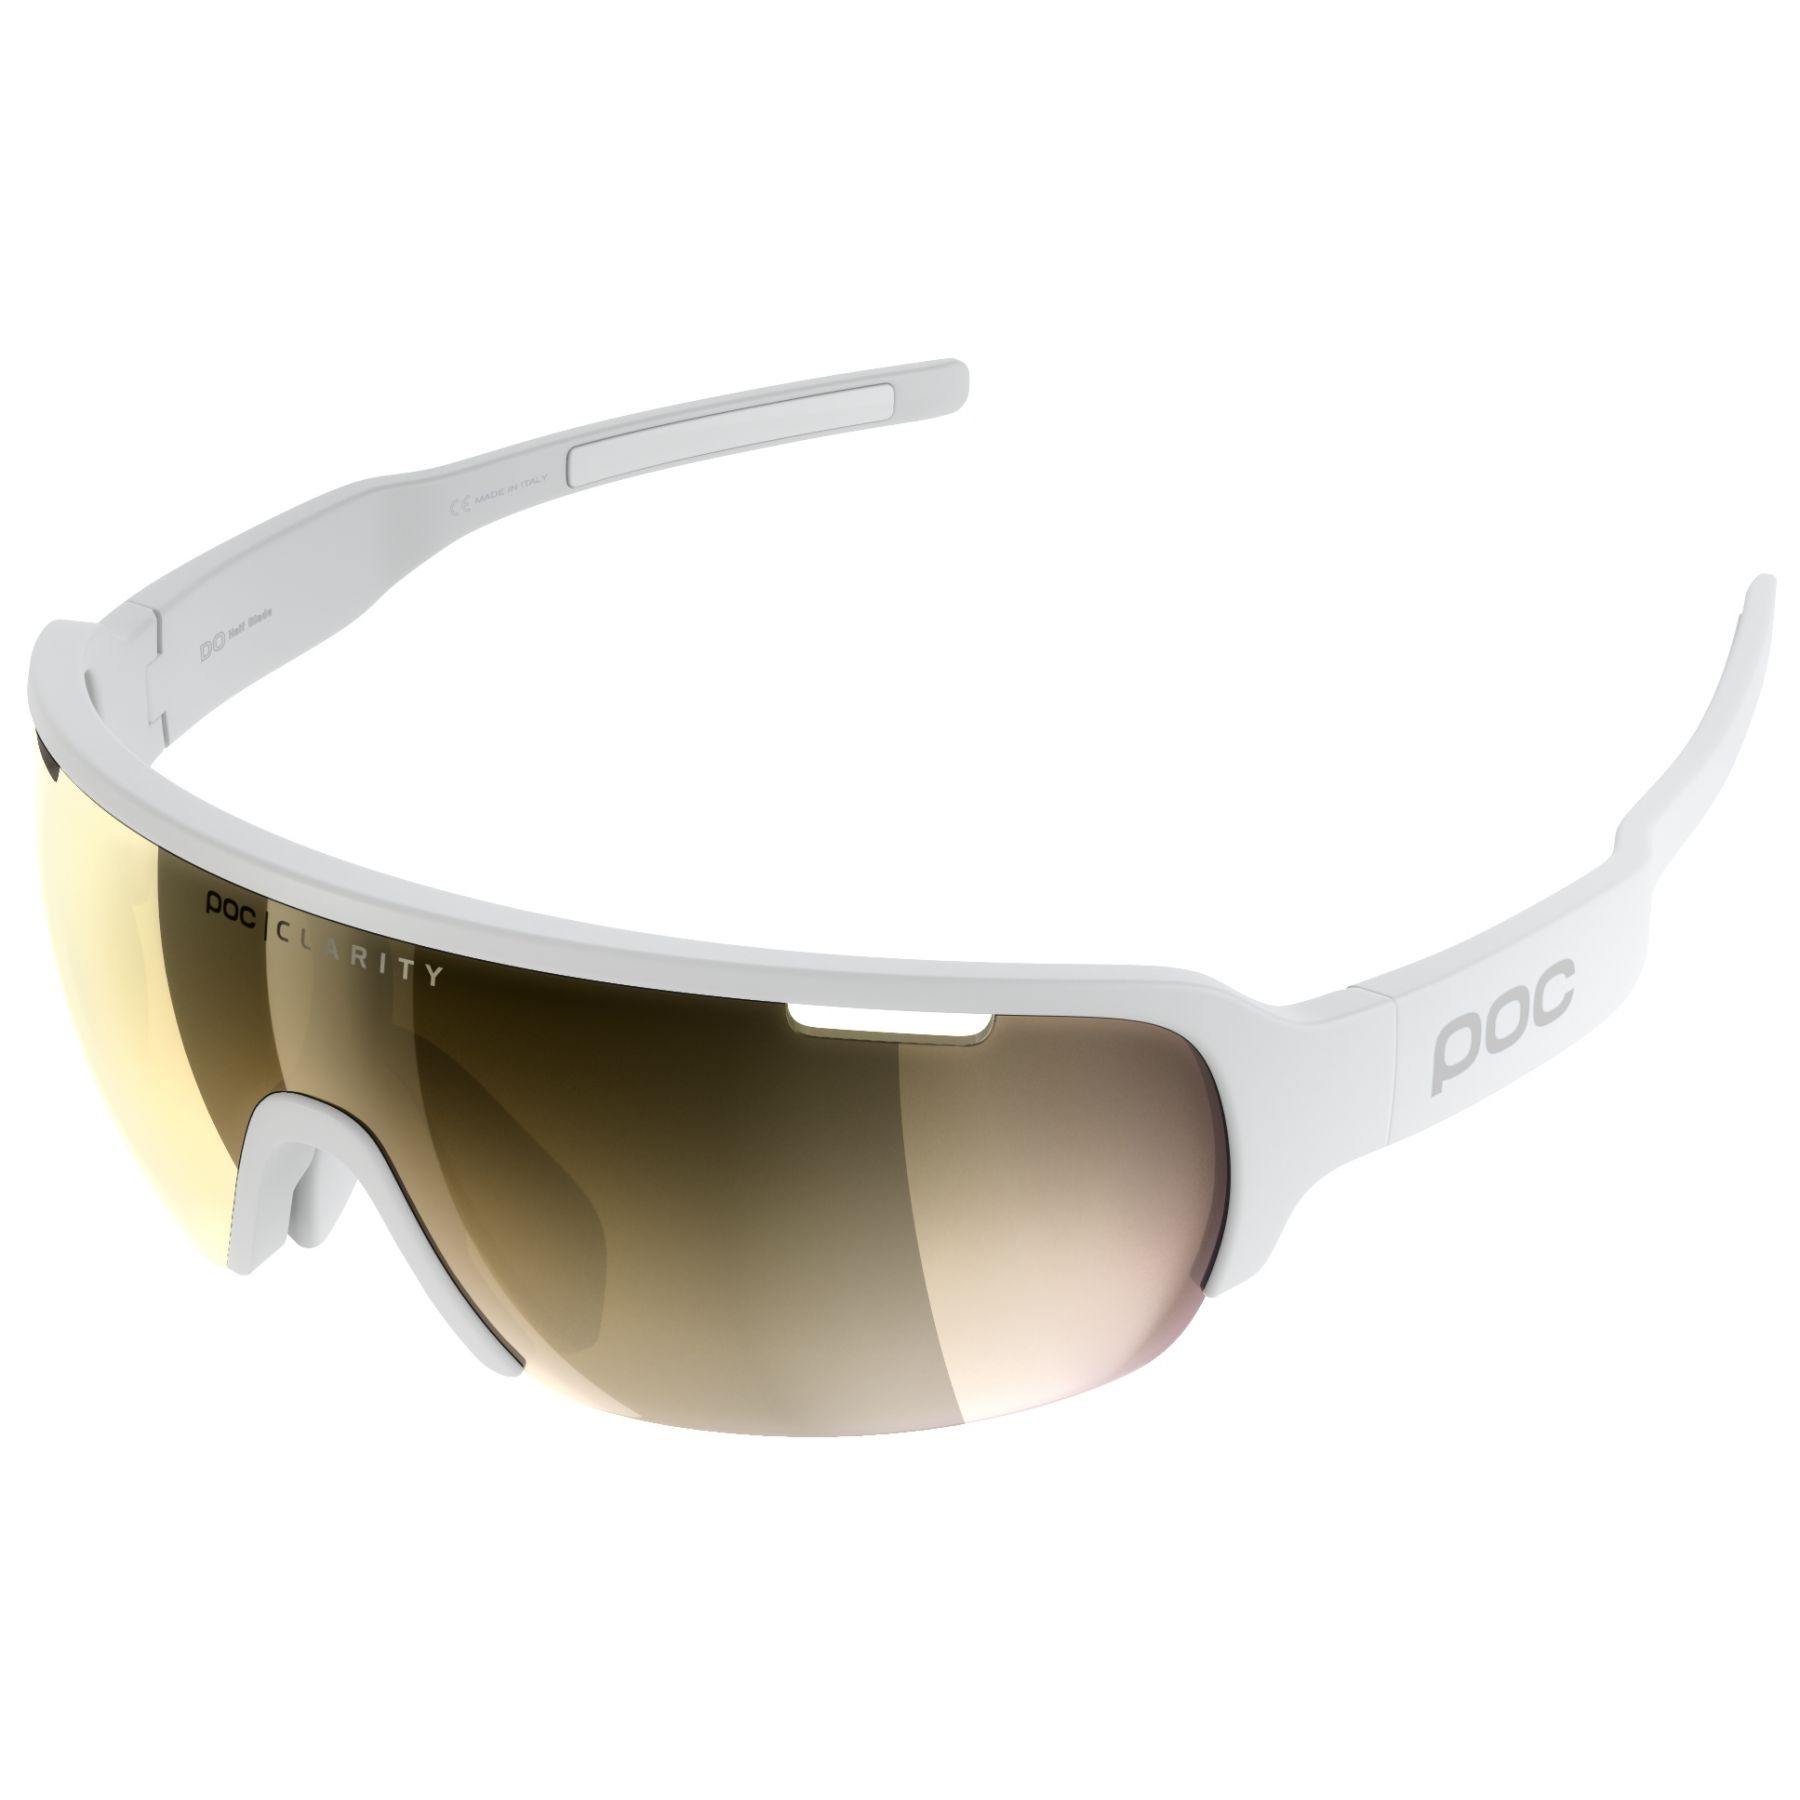 Brug POC Do Half Blade, solbriller, hydrogen white til en forbedret oplevelse